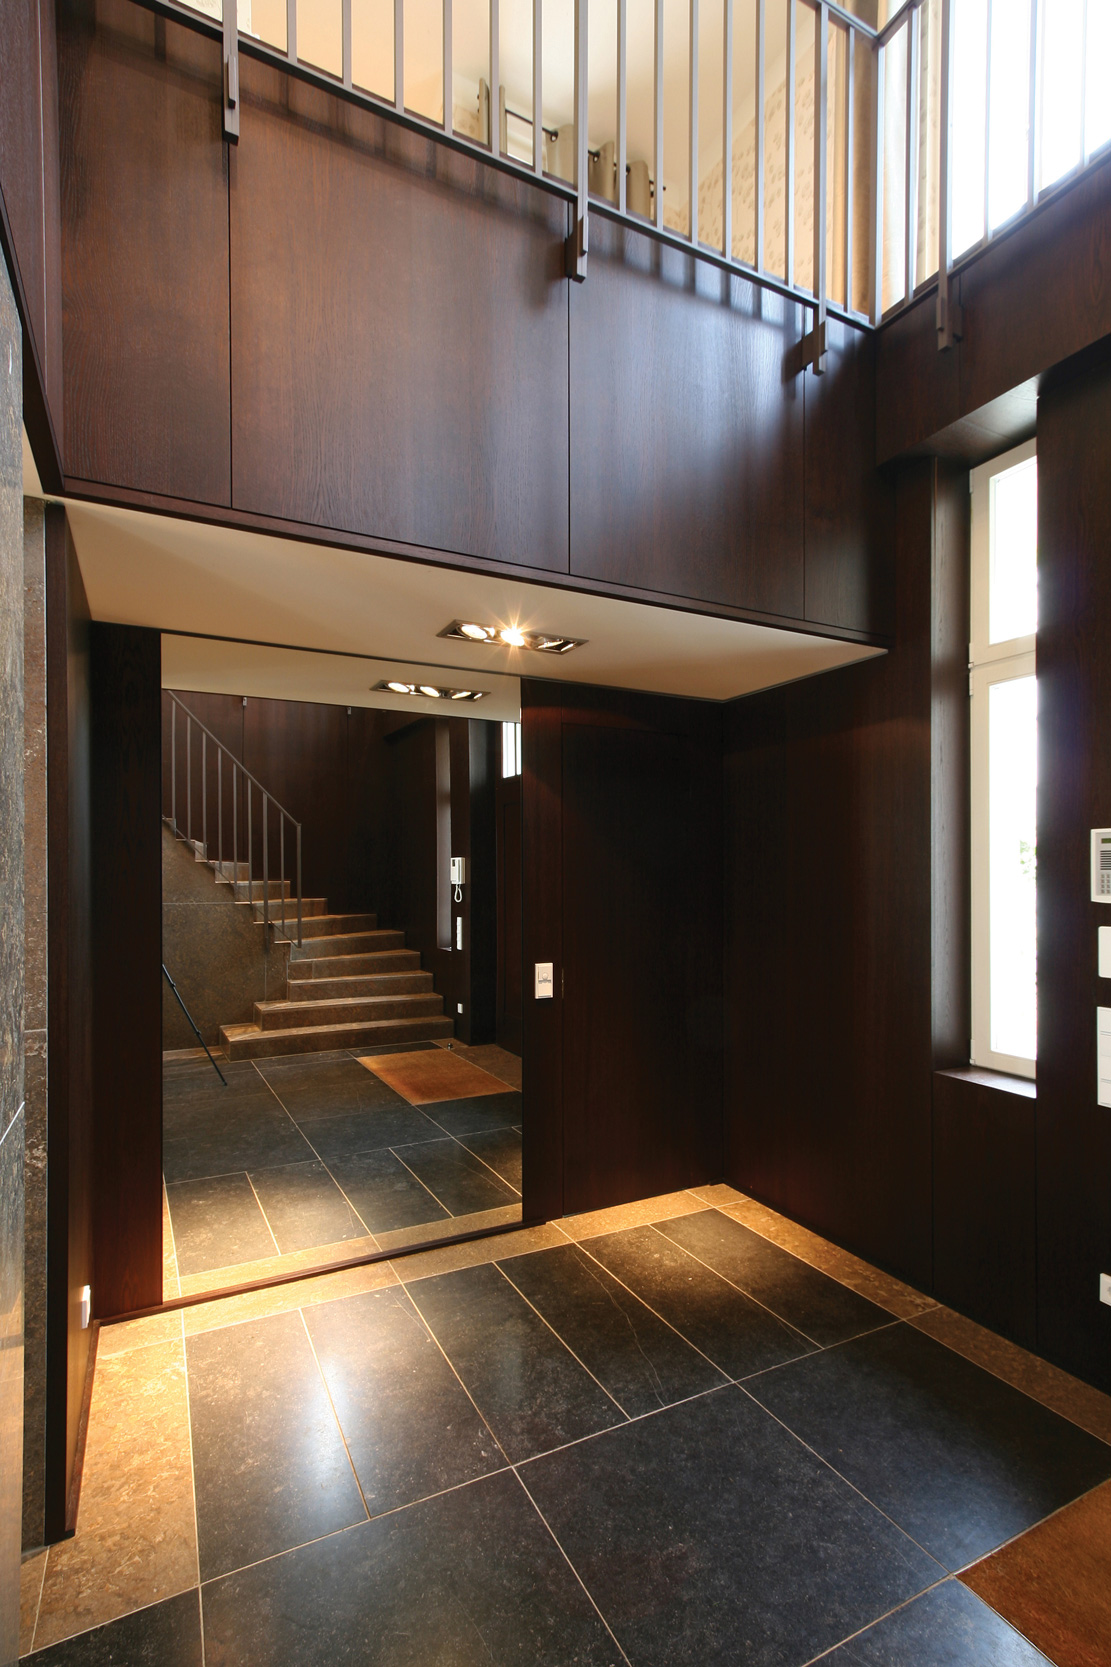 Neubau einer Villa in klassisch-traditioneller Architektursprache - Die Garderobennische mit in die Holzverkleidung eingebaute Spiegelwand